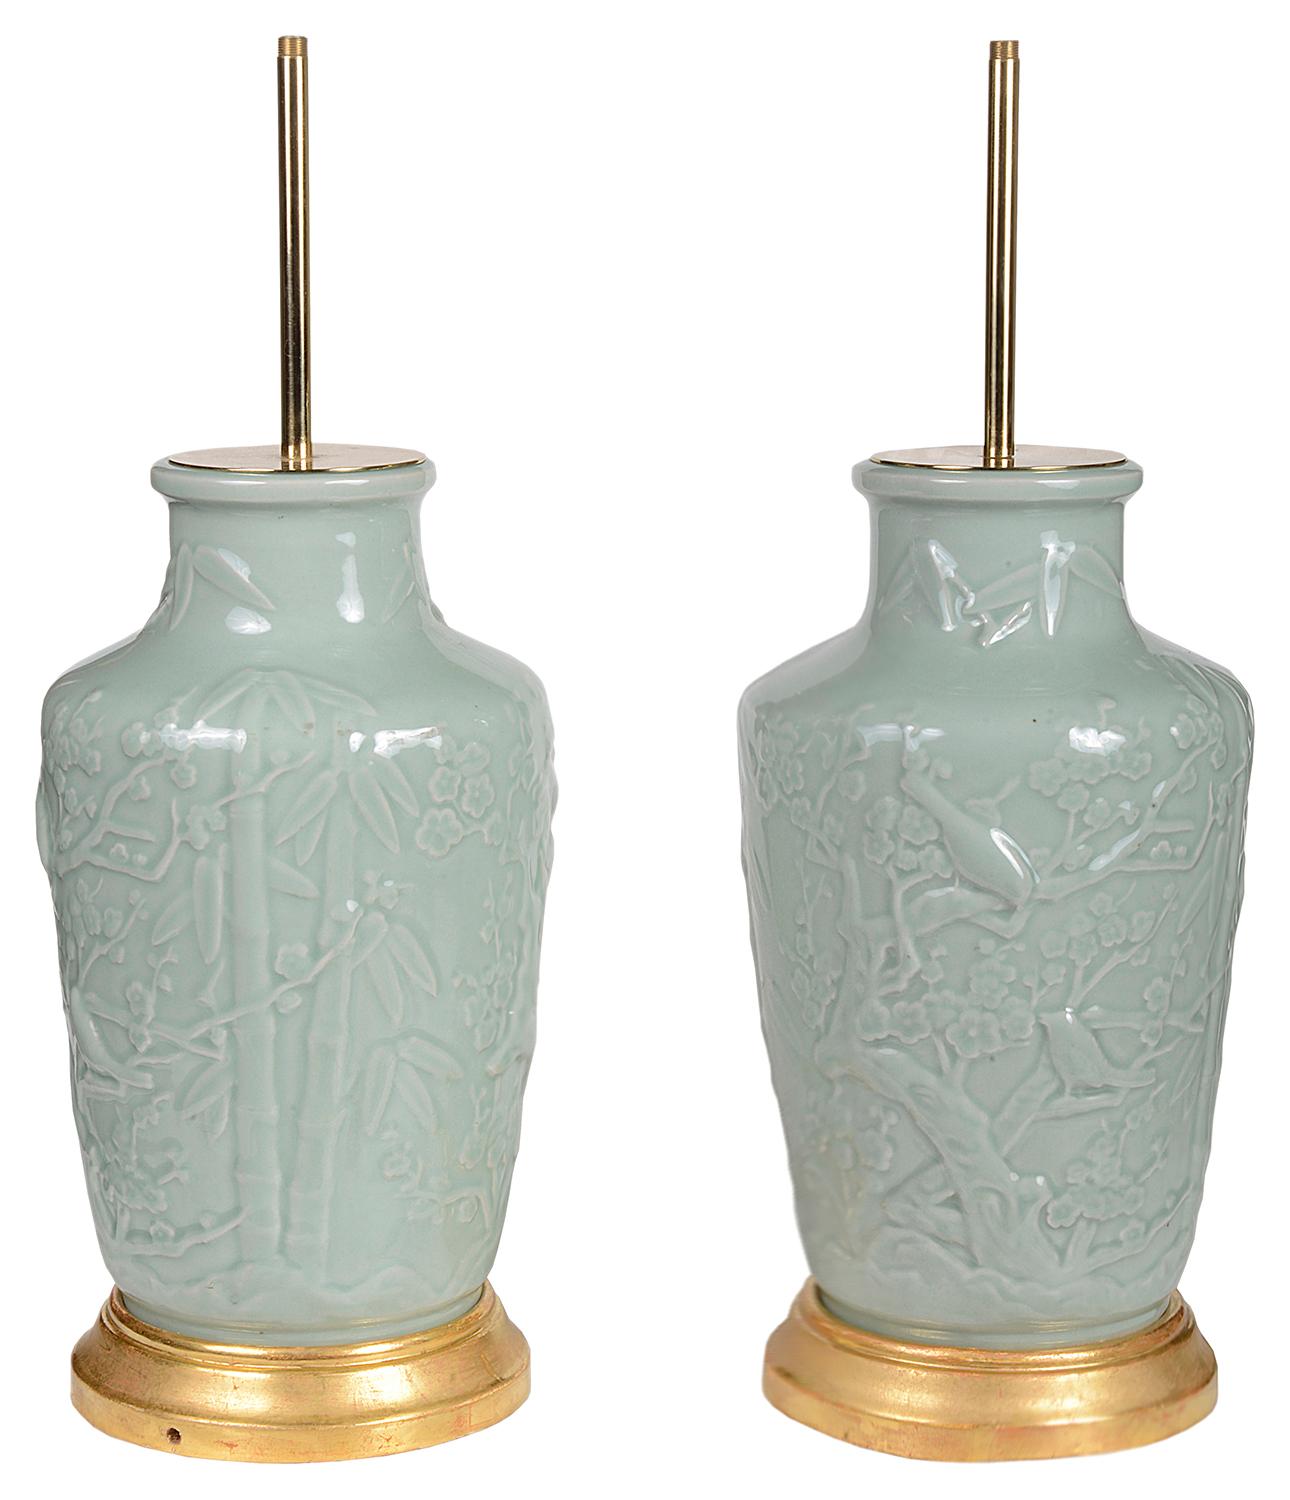 Paire de vases / lampes en porcelaine chinoise céladon de bonne qualité, chacun avec une décoration en relief représentant des oiseaux et des arbres en fleurs. Montés sur des socles en bois doré.